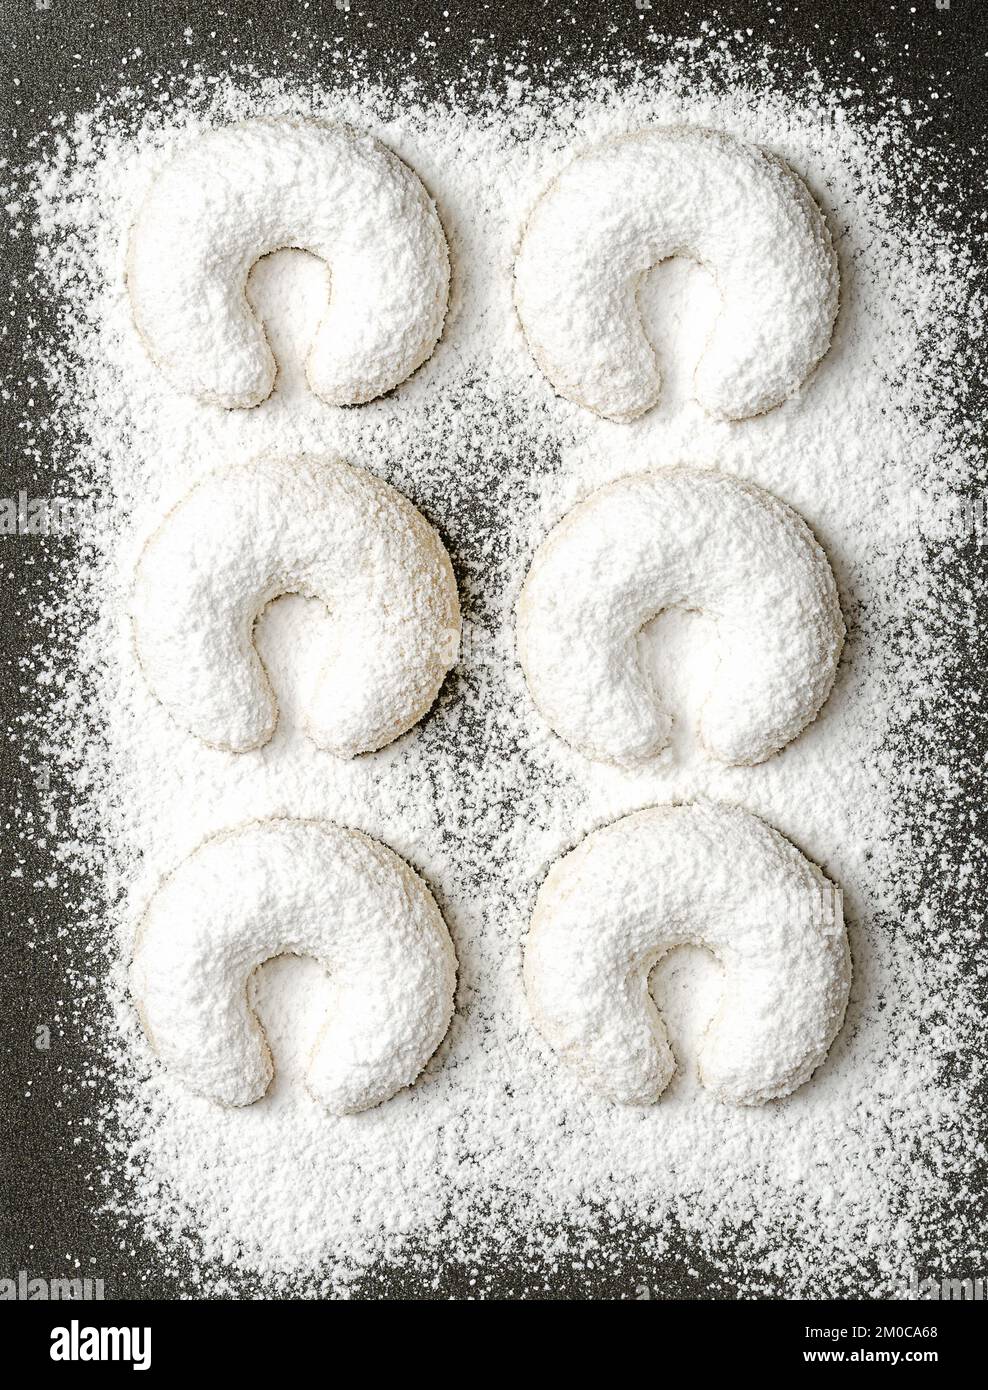 Avec du sucre vanillé épais de Crescents de vanille, Vanillekipferl sur une plaque à pâtisserie Biscuits de Noël en forme de croissant, originaires d'Autriche. Banque D'Images